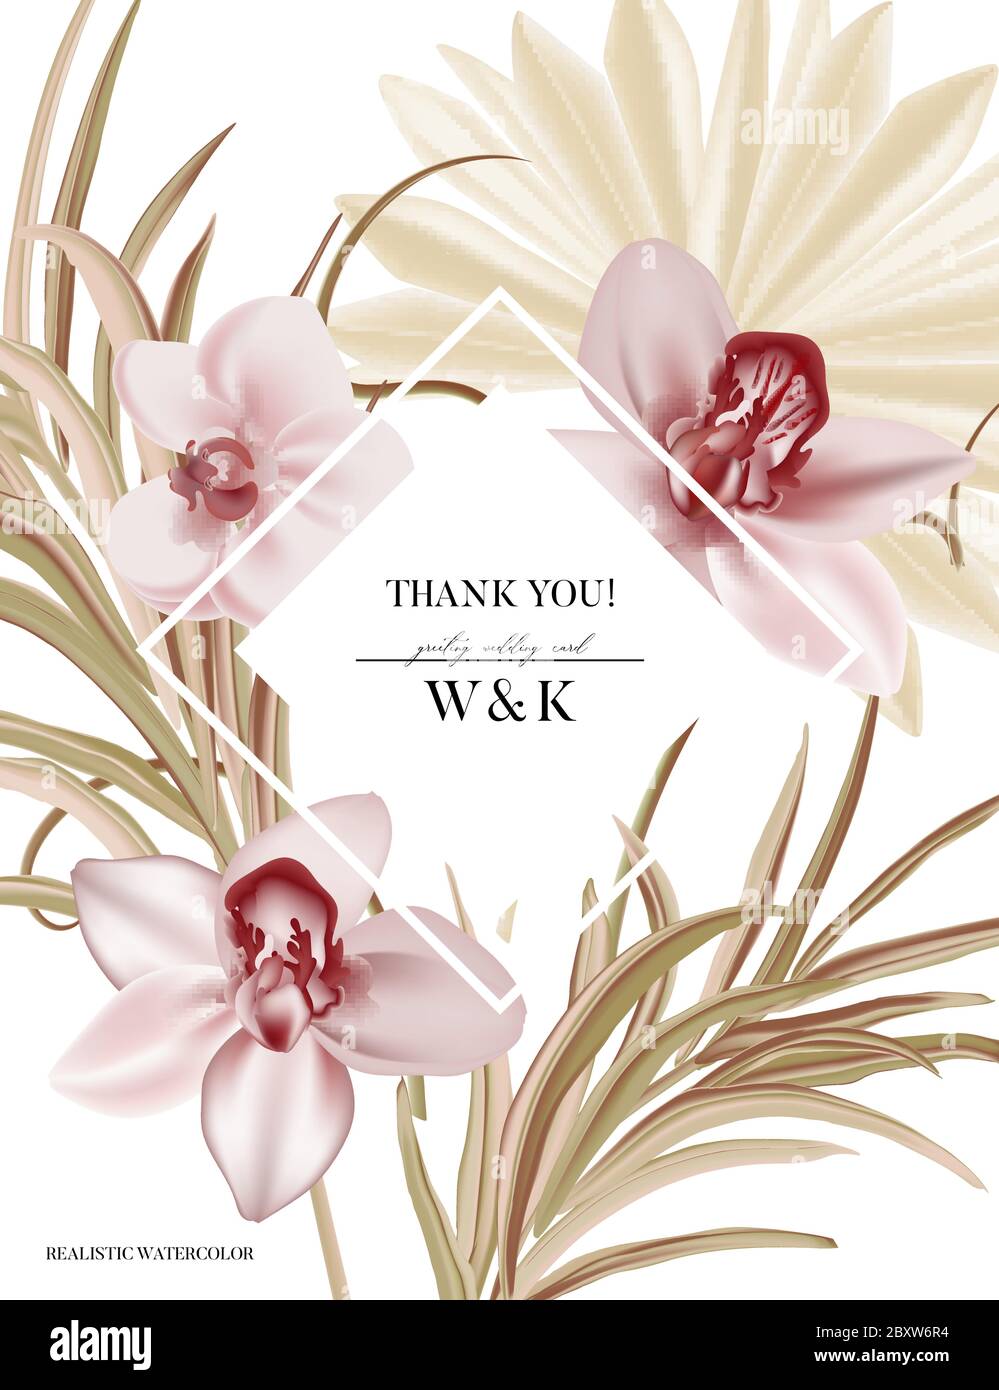 Orchidee Hochzeit Einladung, floral laden grüne Pampas Gras, tropische  Palmblatt, rosa Blume Blüte dekorative Weihnachtskarte. Realistischer  Vektor elegant Stock-Vektorgrafik - Alamy